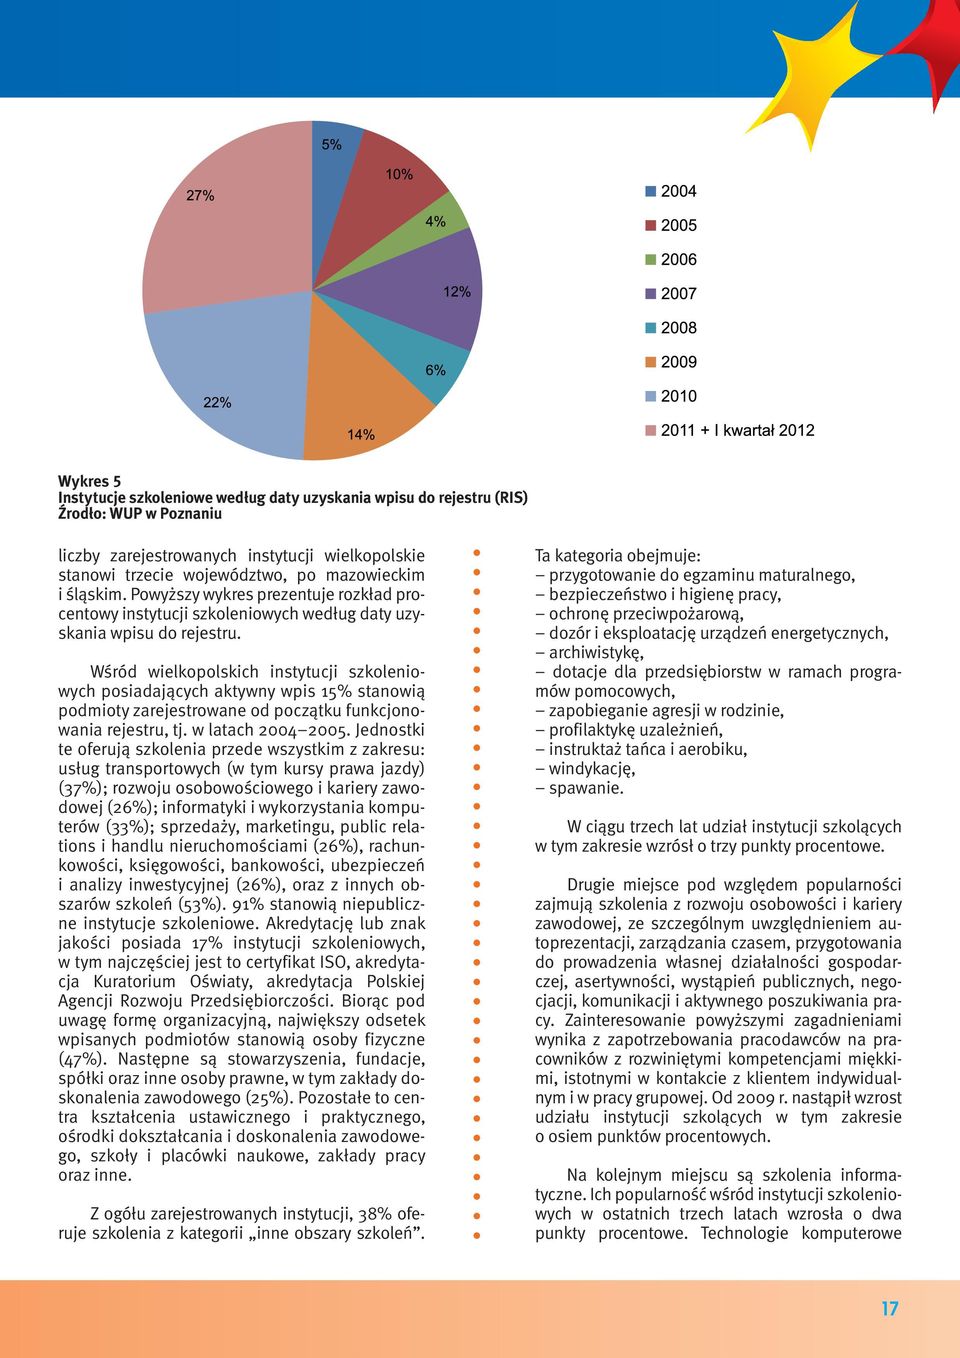 Wśród wielkopolskich instytucji szkoleniowych posiadających aktywny wpis 15% stanowią podmioty zarejestrowane od początku funkcjonowania rejestru, tj. w latach 2004 2005.